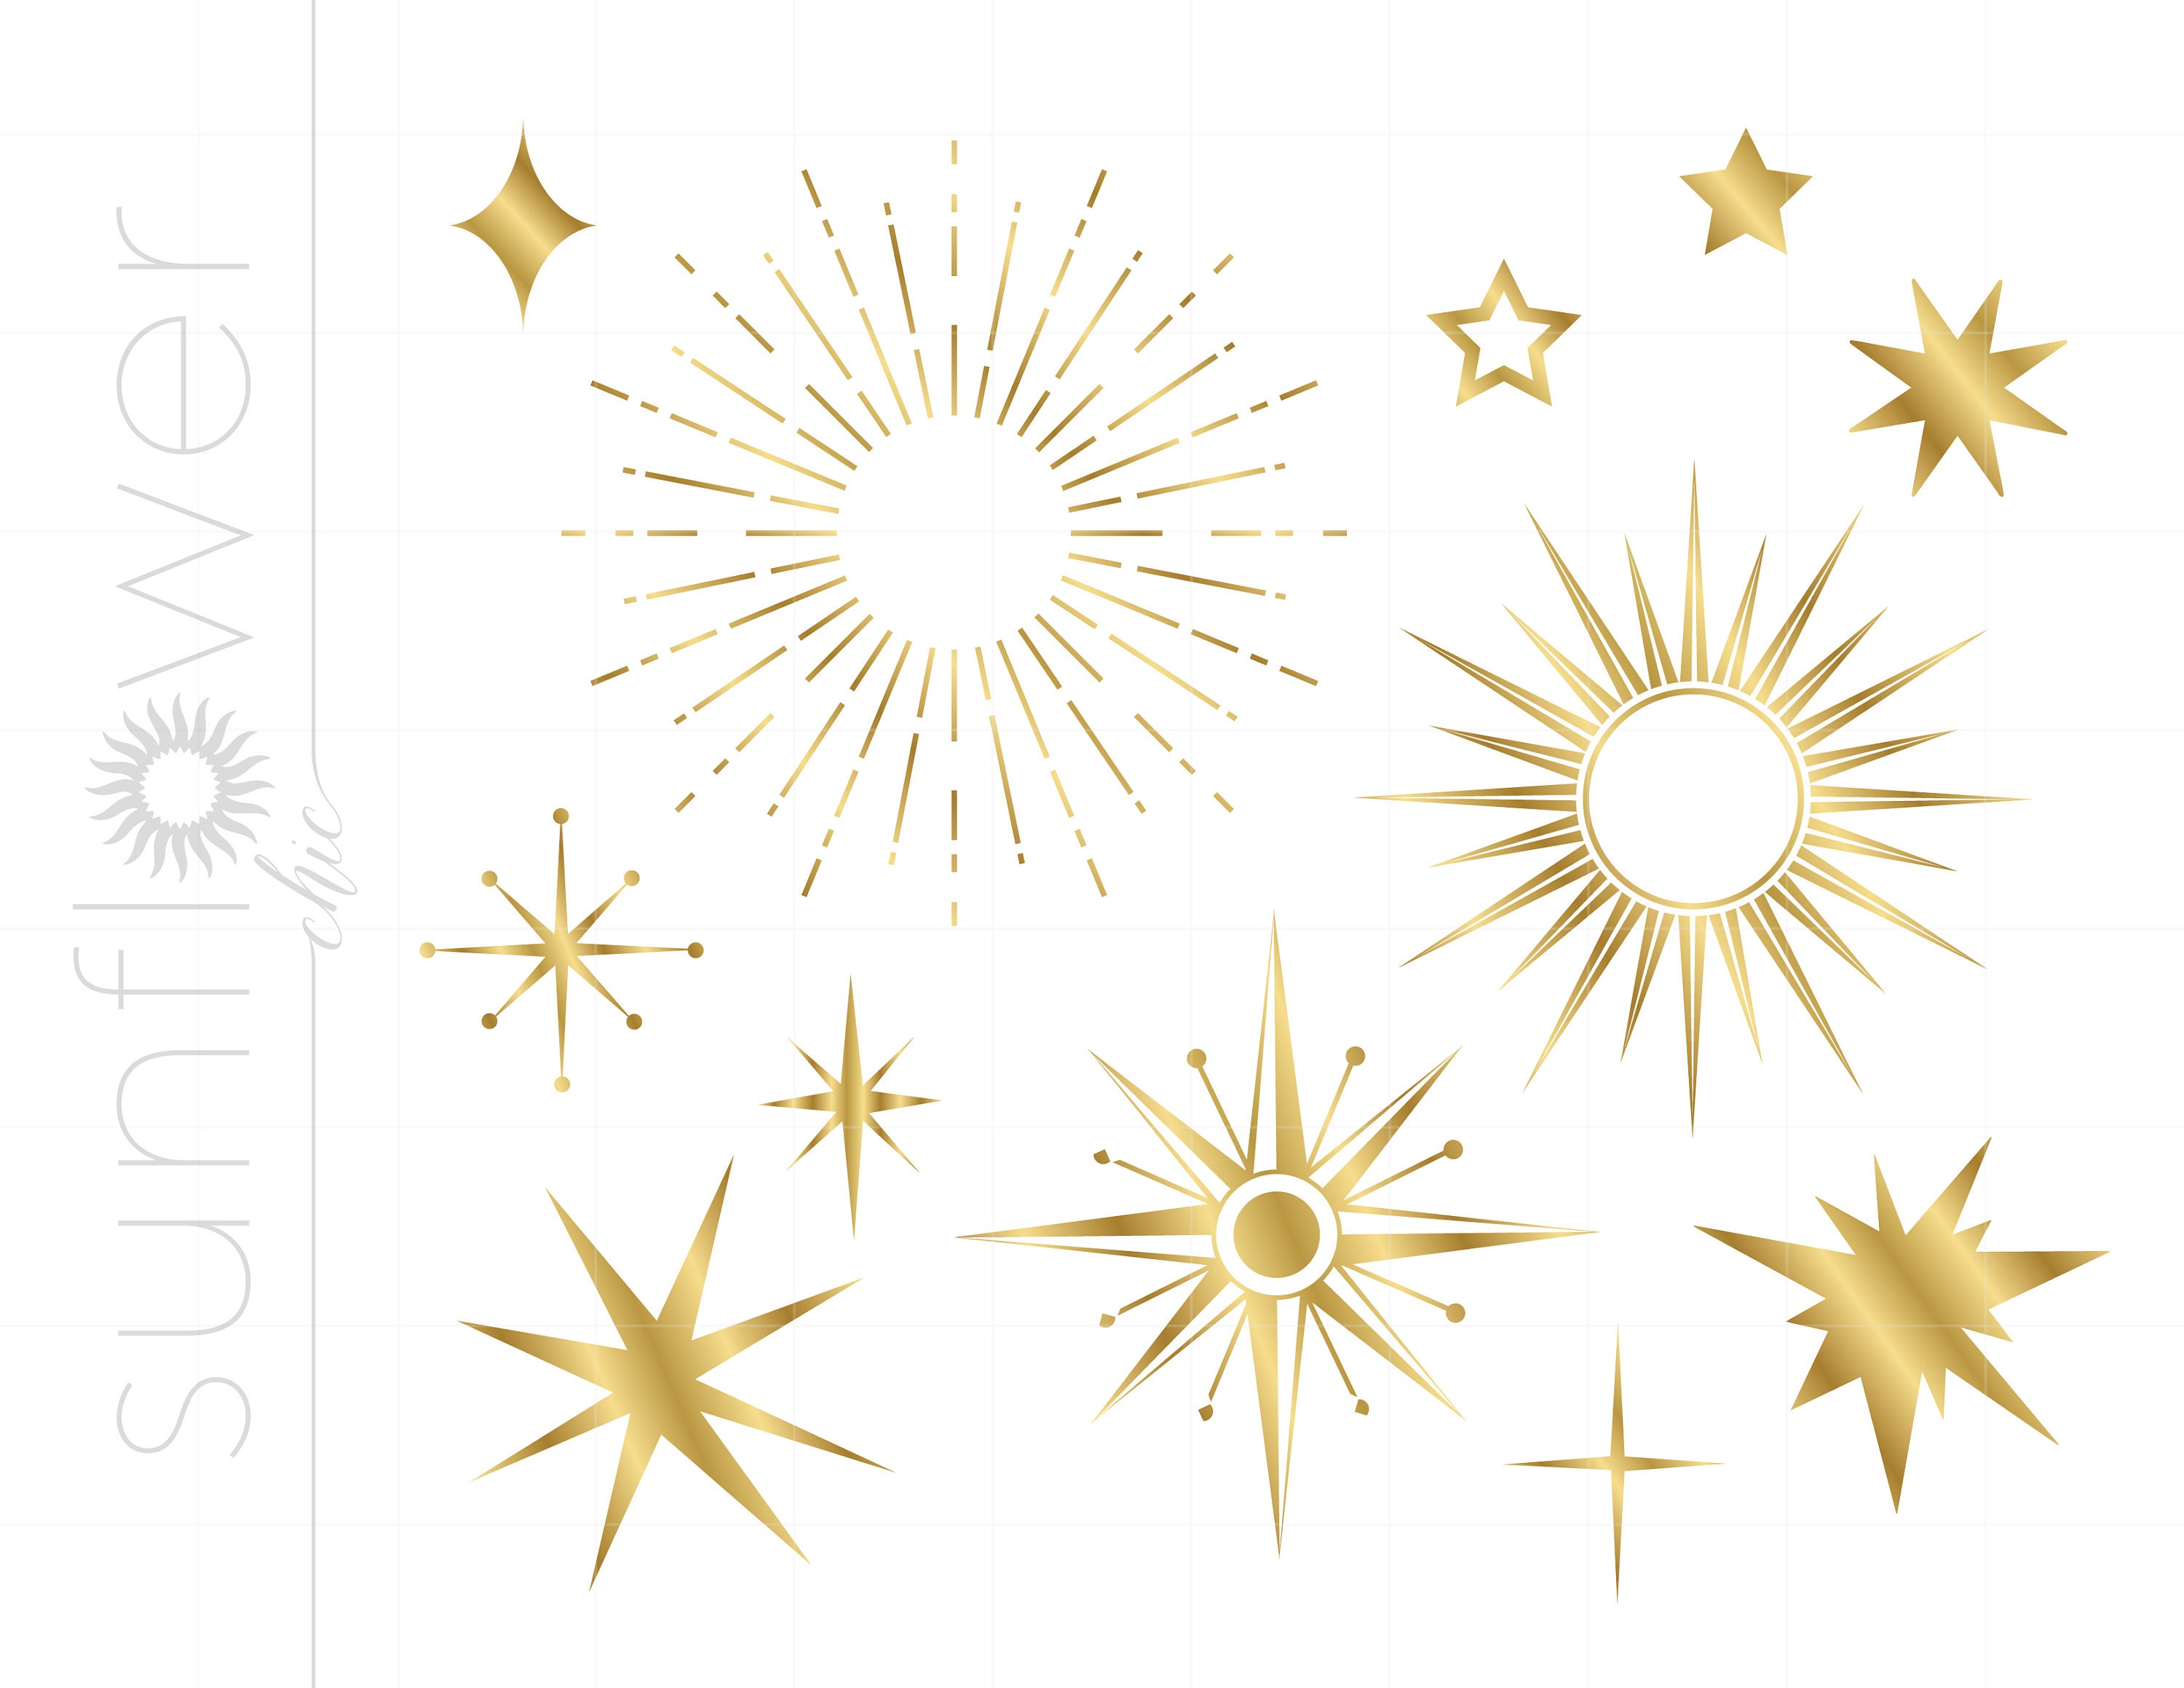 Glitter Confetti Borders Clip Art. Gold Glitter Frames. Gold, Silver,  Bronze Christmas Confetti Glitter. Gold New Year's Clip Art. 